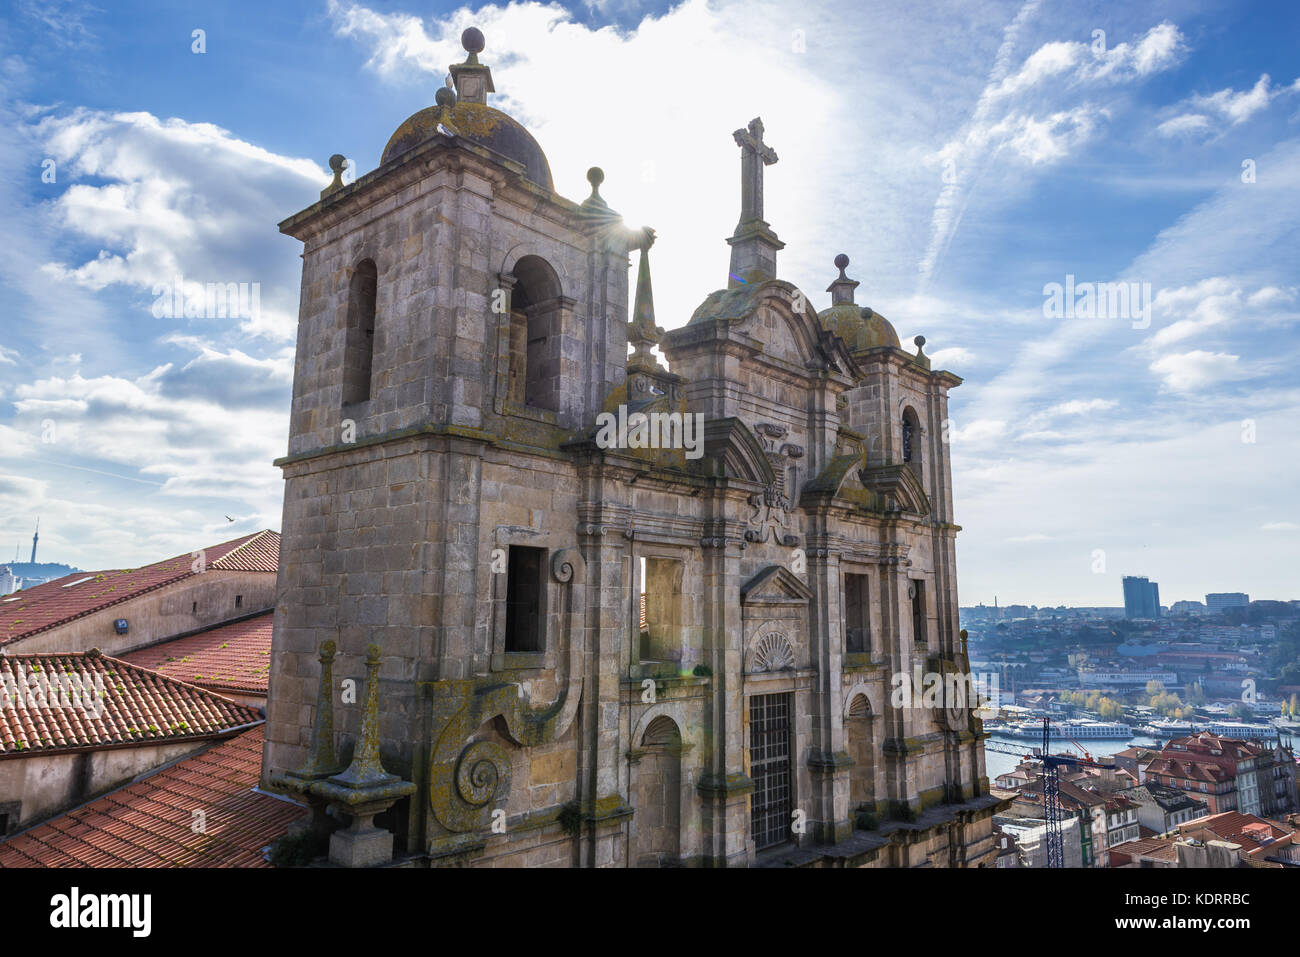 Igreja dos Grilos chiesa e convento (letteralmente il Cricket's Chiesa) nella città di Porto sulla Penisola Iberica, la seconda più grande città in Portogallo Foto Stock